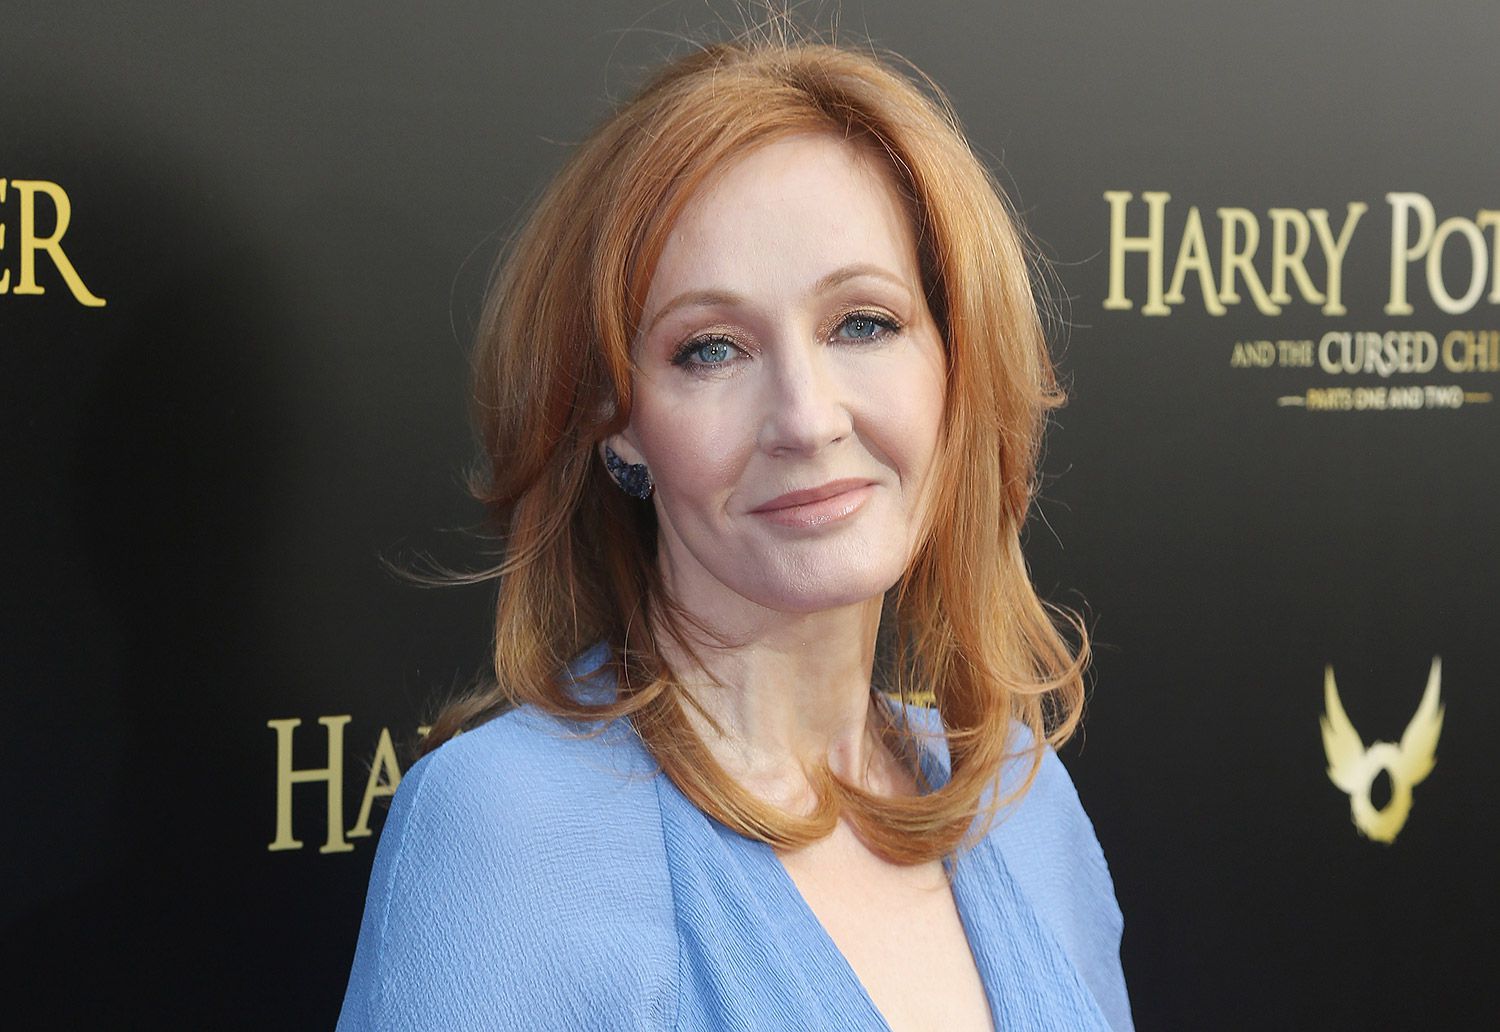 JK Rowling dit que son nouveau livre sur une célébrité considérée comme transphobe n'était pas basé sur ce qui "m'est arrivé"